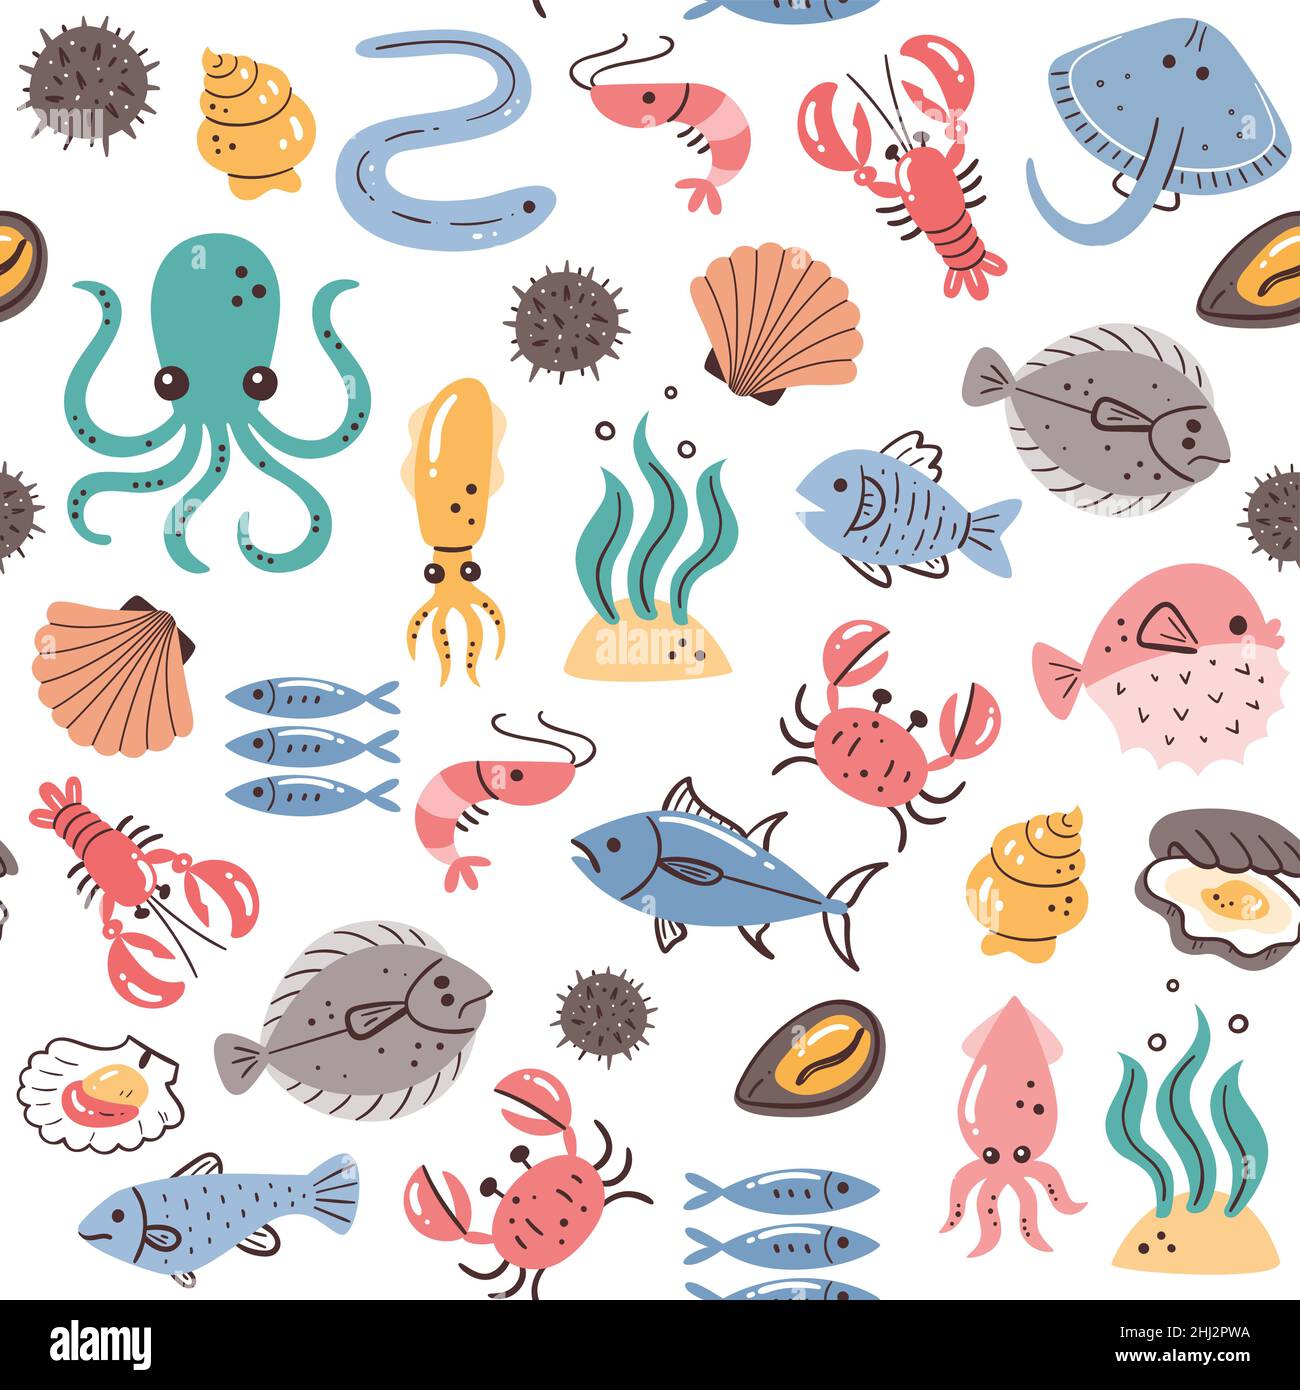 Seafood Nahtloses Muster. Fisch, Algen und Schalentiere. Abbildung: Zutaten für das Kochen. Isolierte, farbenfrohe, handgezeichnete Zutaten auf weißer Ba Stock Vektor